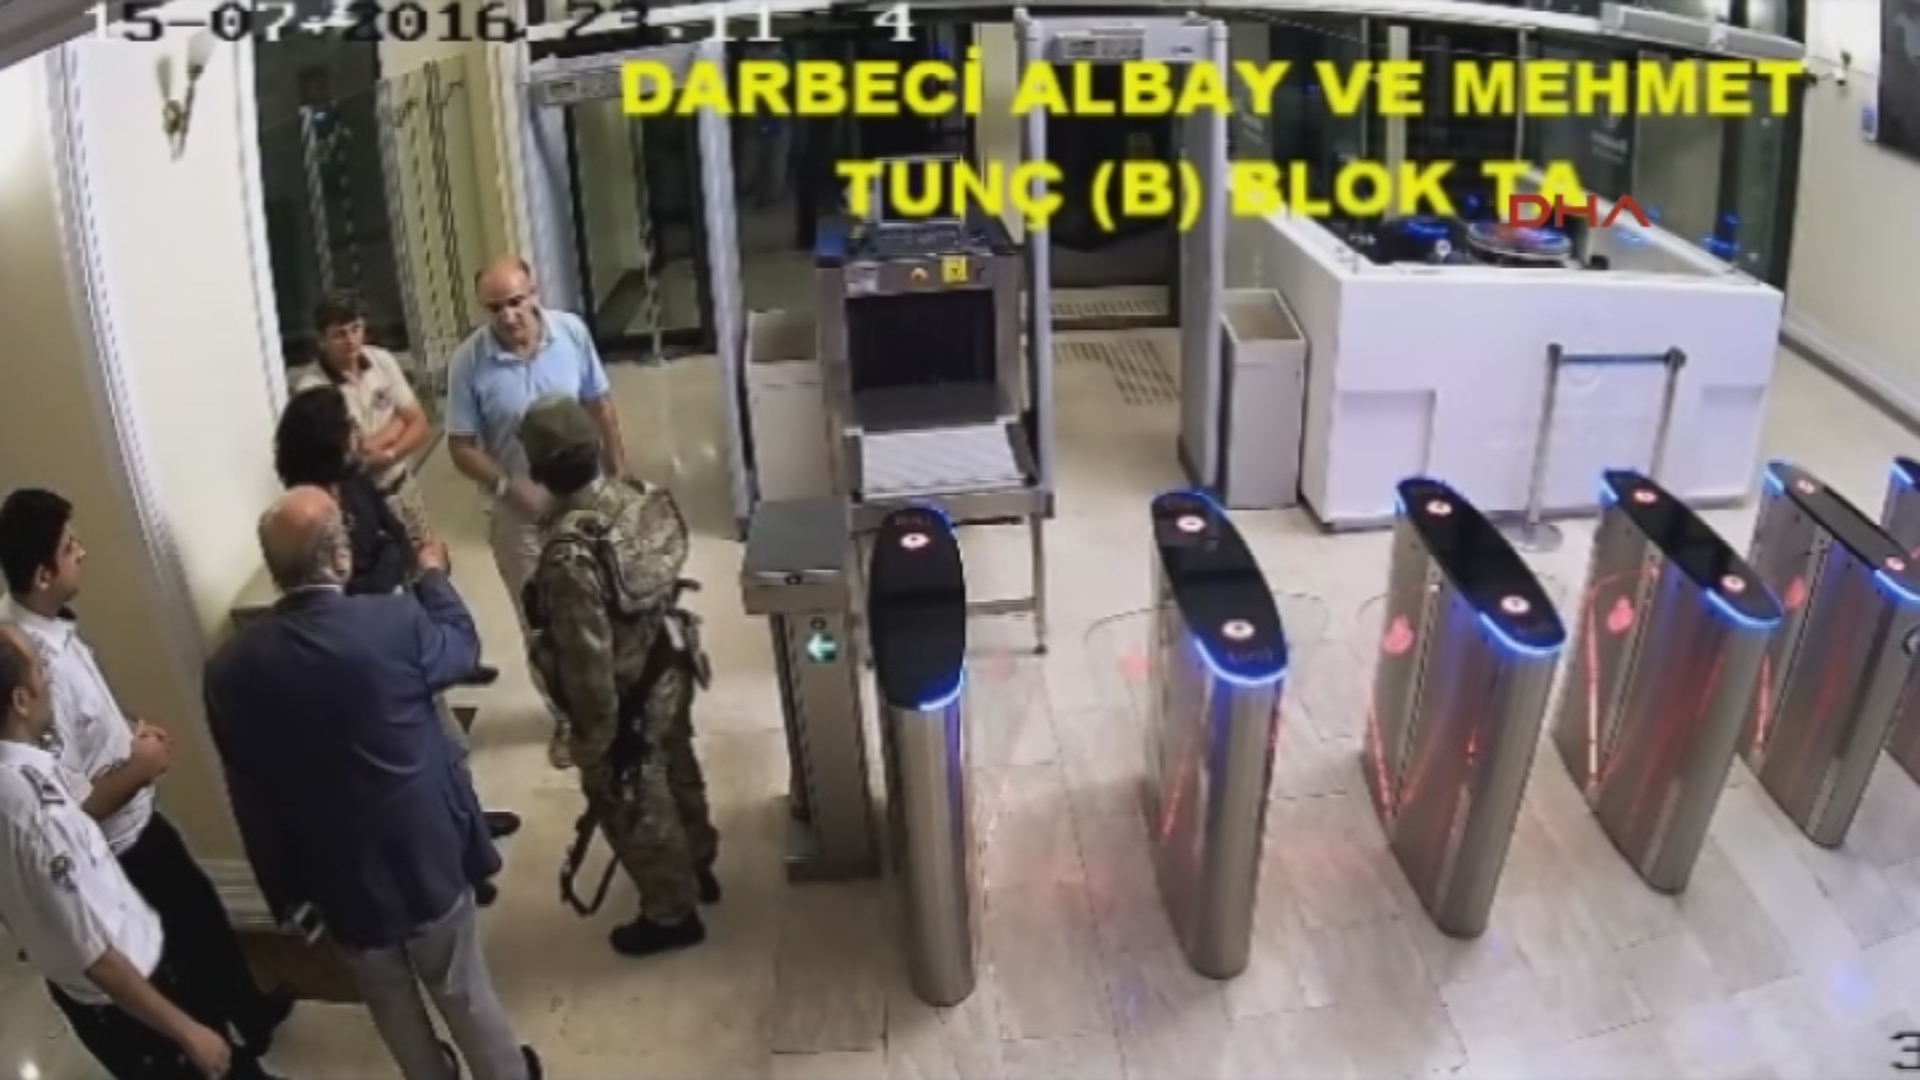 Секретарь гражданской обороны АГС  Мехмет Тунч встретил путчистов в дверях.